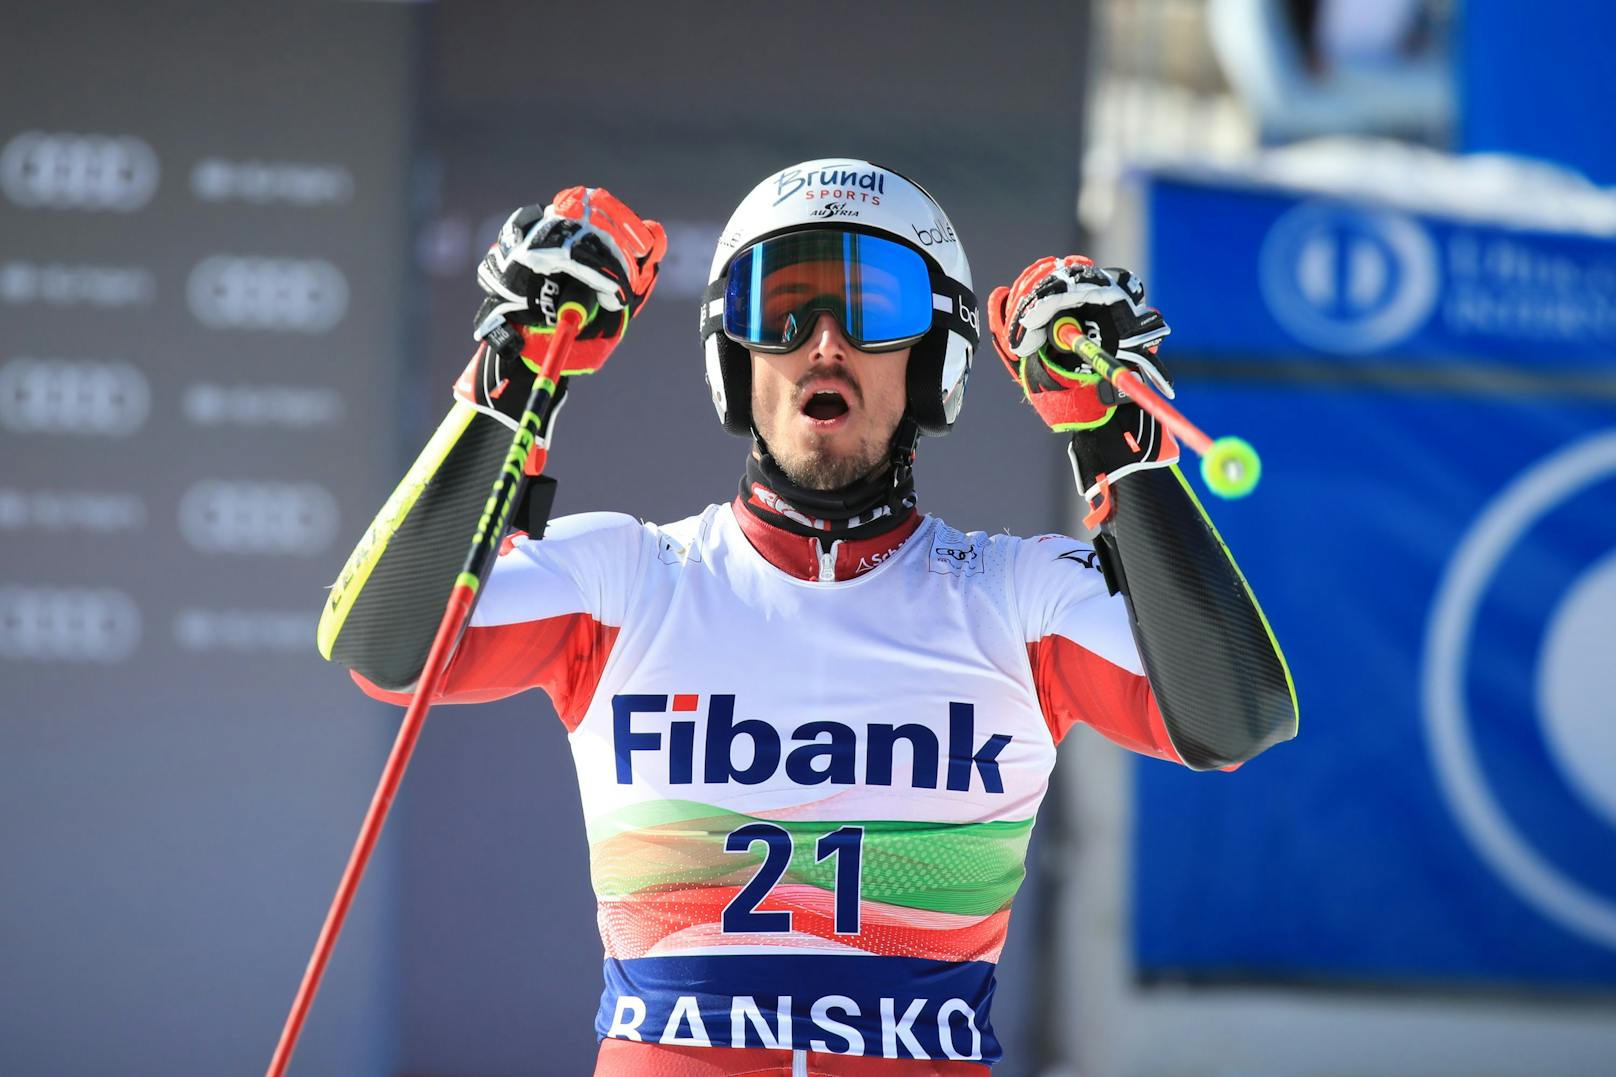 Direkt nach der WM wurde der Weltcup fortgesetzt – und zwar im bulgarischen Bansko. Stefan Brennsteiner carvte im Riesentorlauf erstmals aufs Stockerl, wurde beim Sieg von Zubcic Dritter.